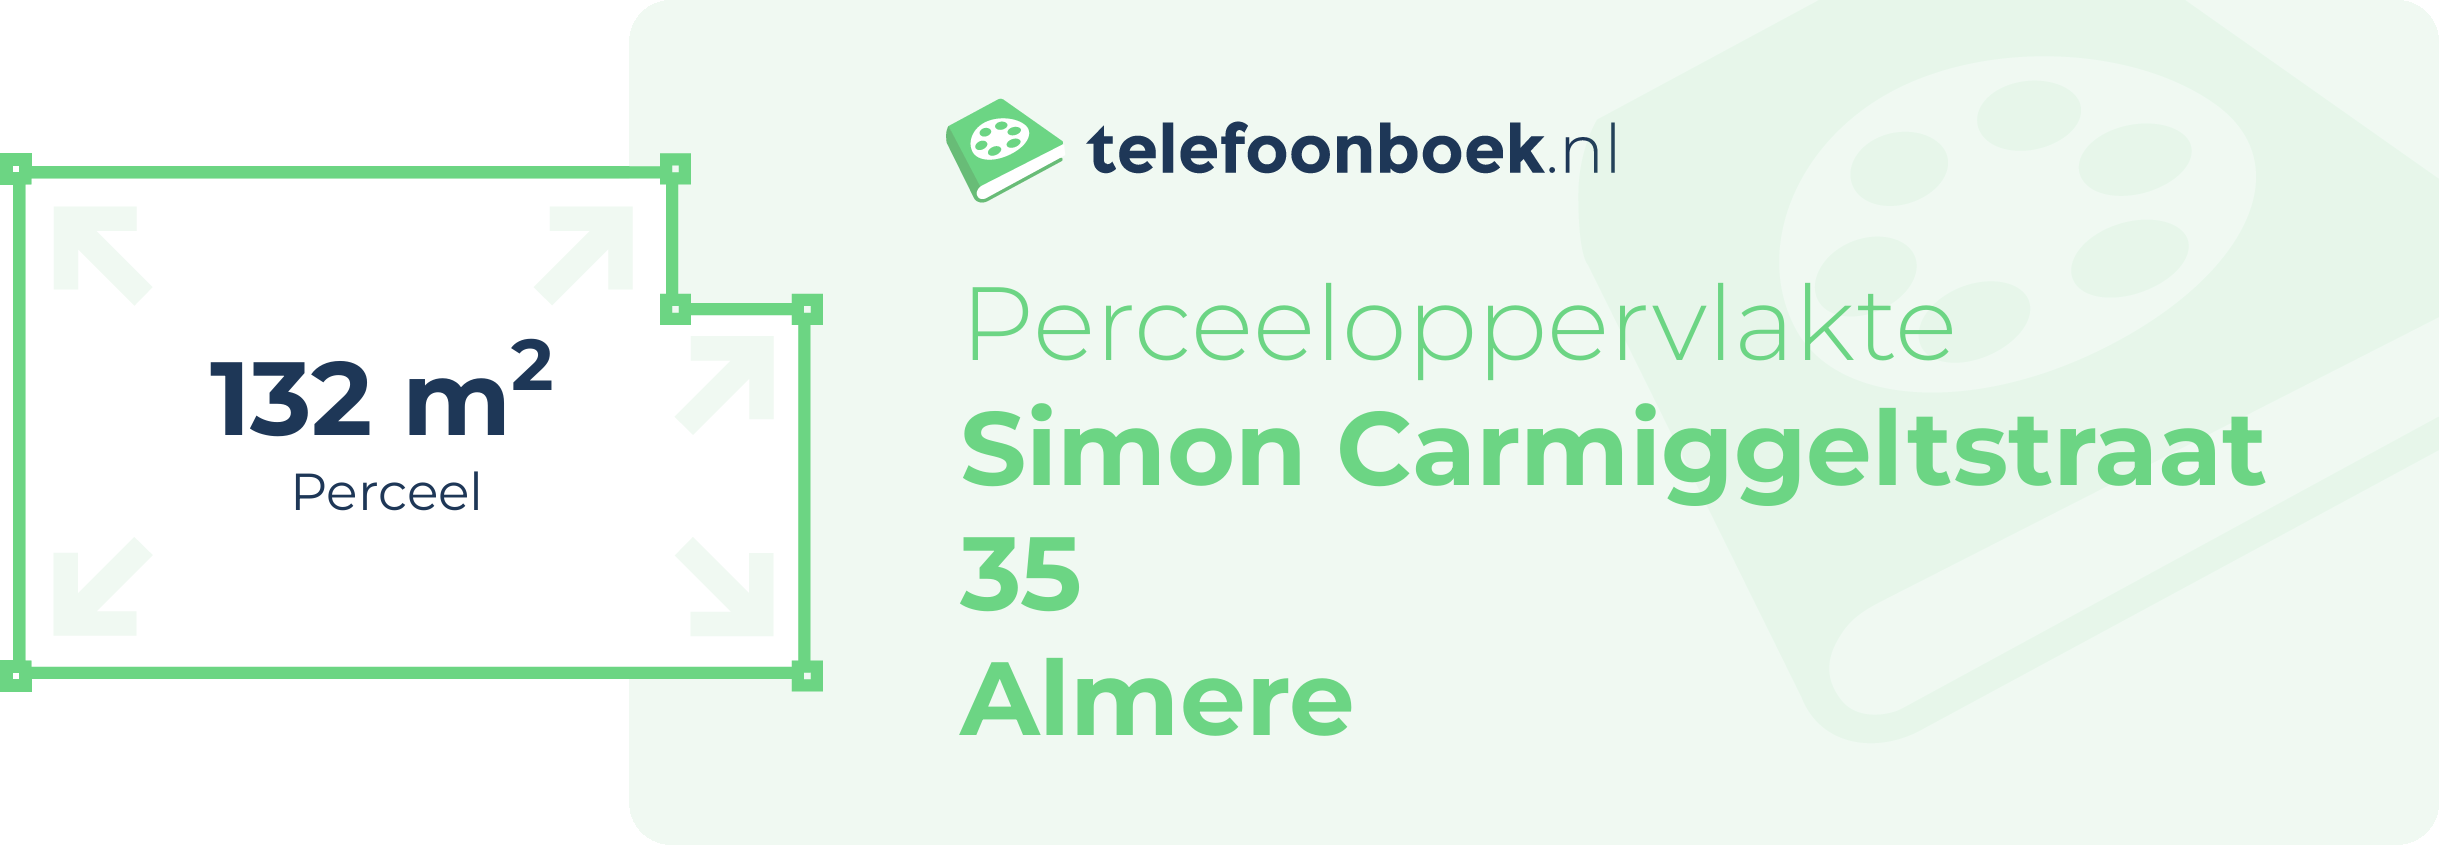 Perceeloppervlakte Simon Carmiggeltstraat 35 Almere